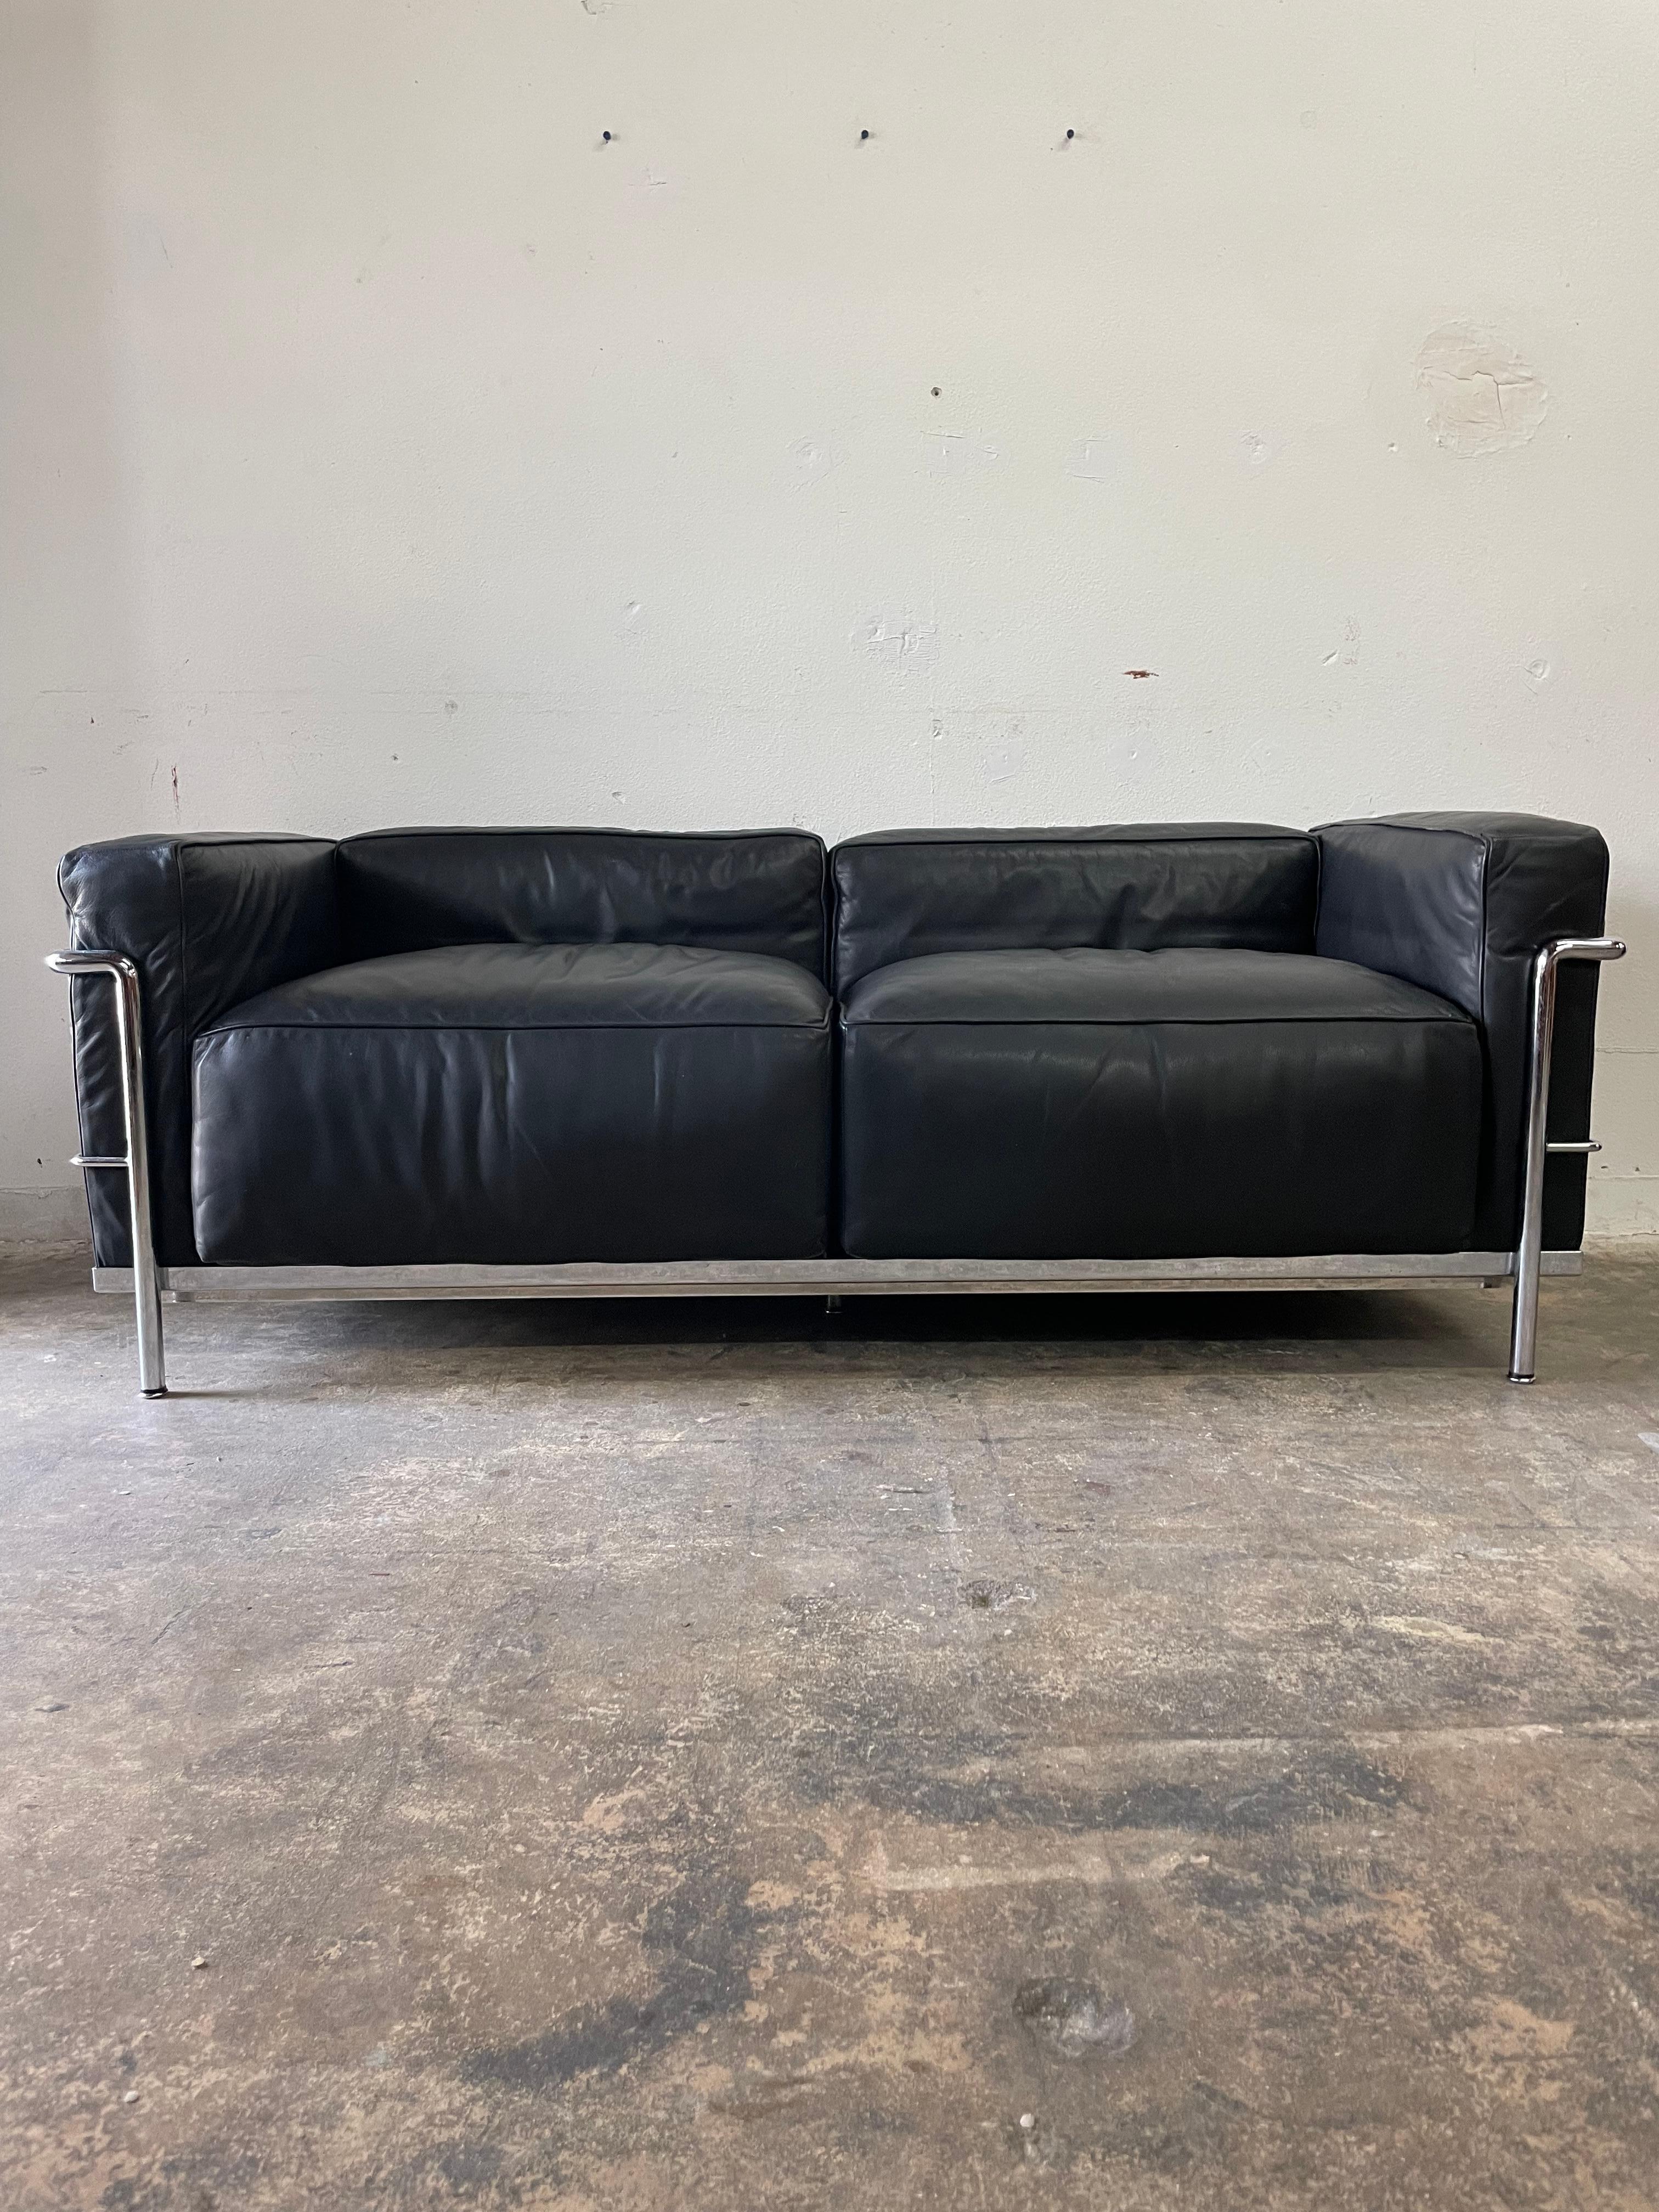 Authentique canapé LC2 en chrome et cuir noir conçu par Le Corbusier et Charlotte Perriand et produit par Cassina.
Cuir noir. Estampillé. Un peu de patine sur le cuir.